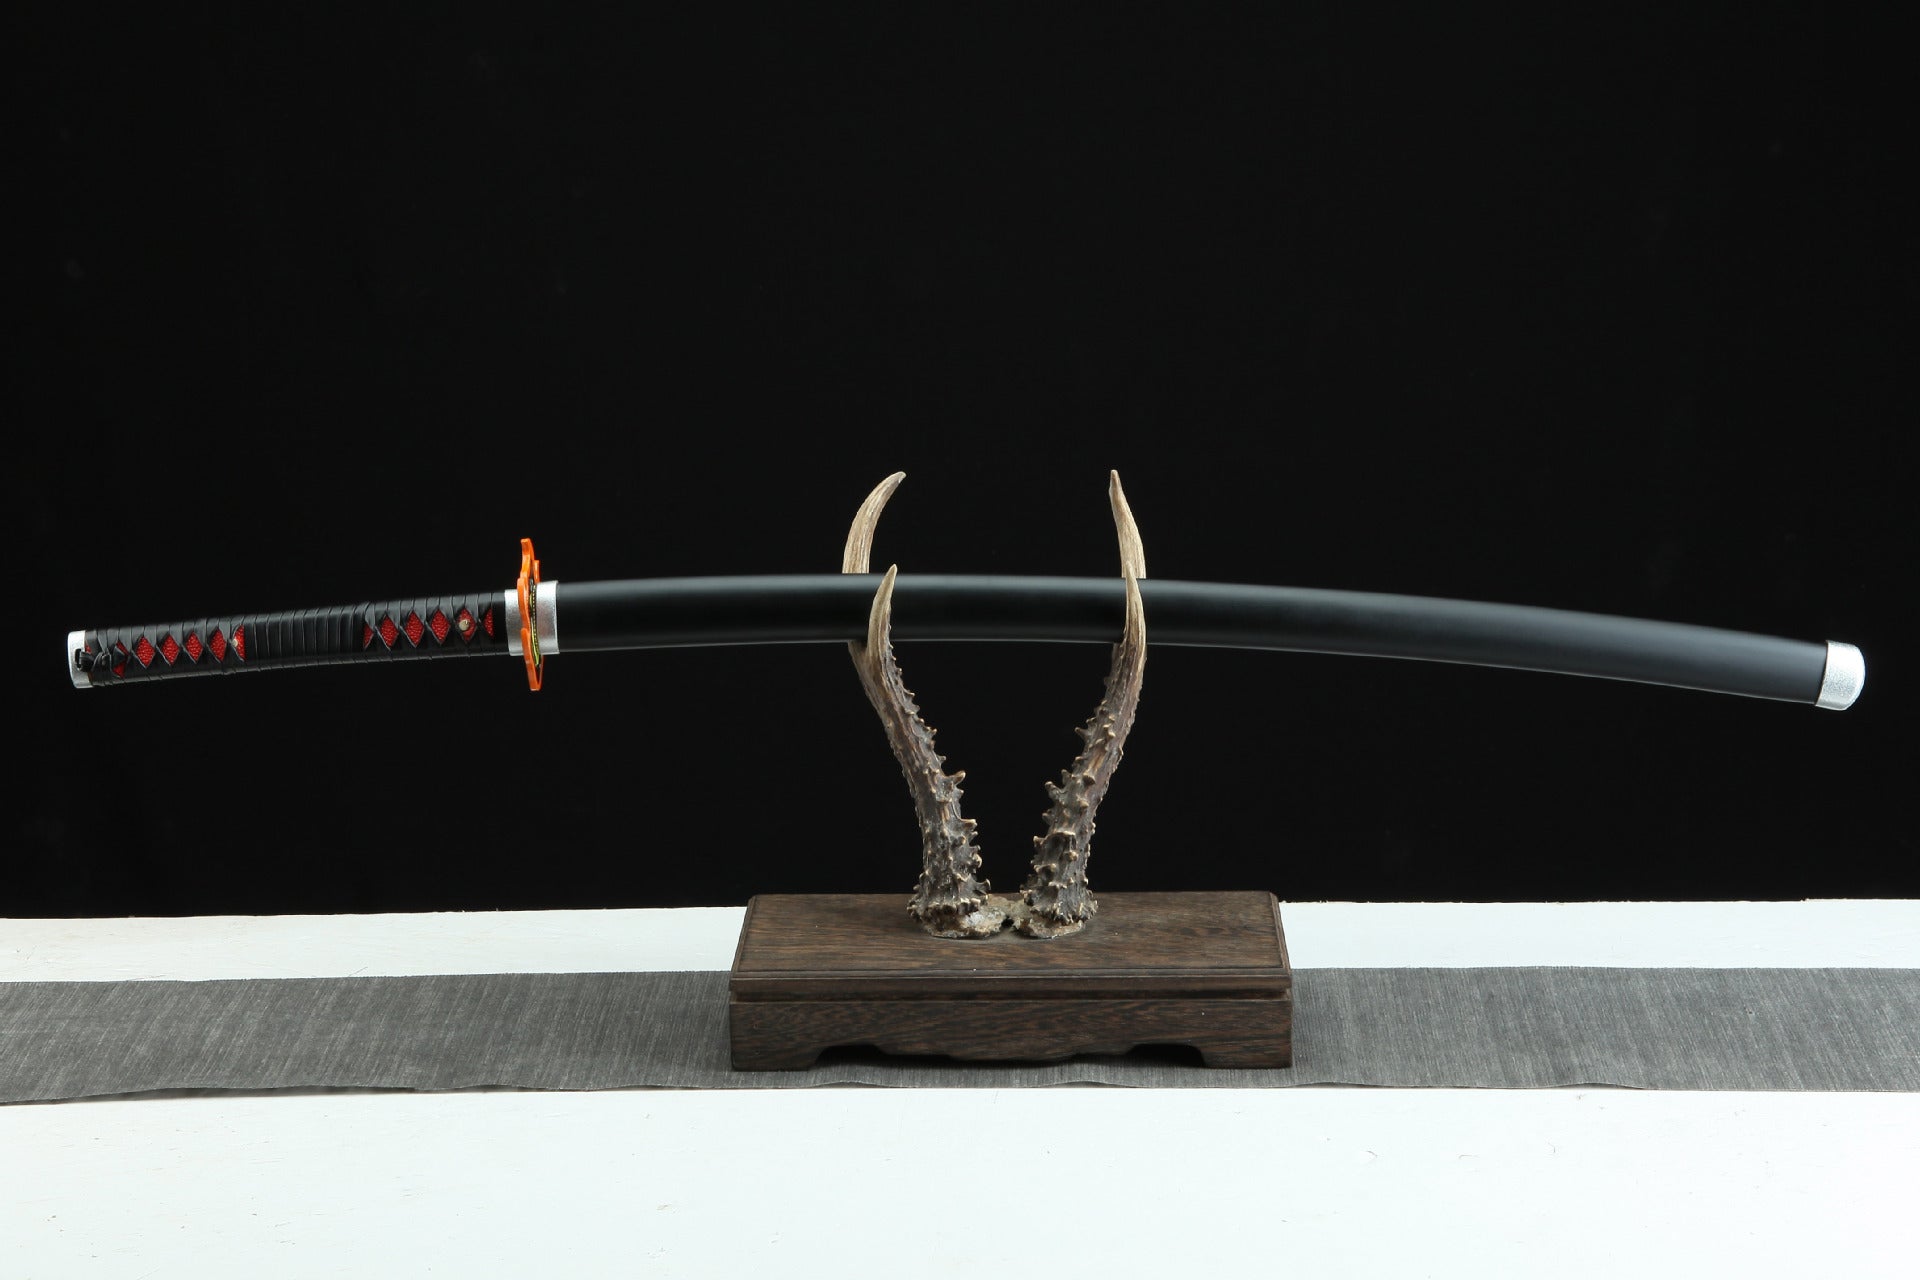 Tanjiro's Nichirin Sword, sheathed, placed on the sword rack